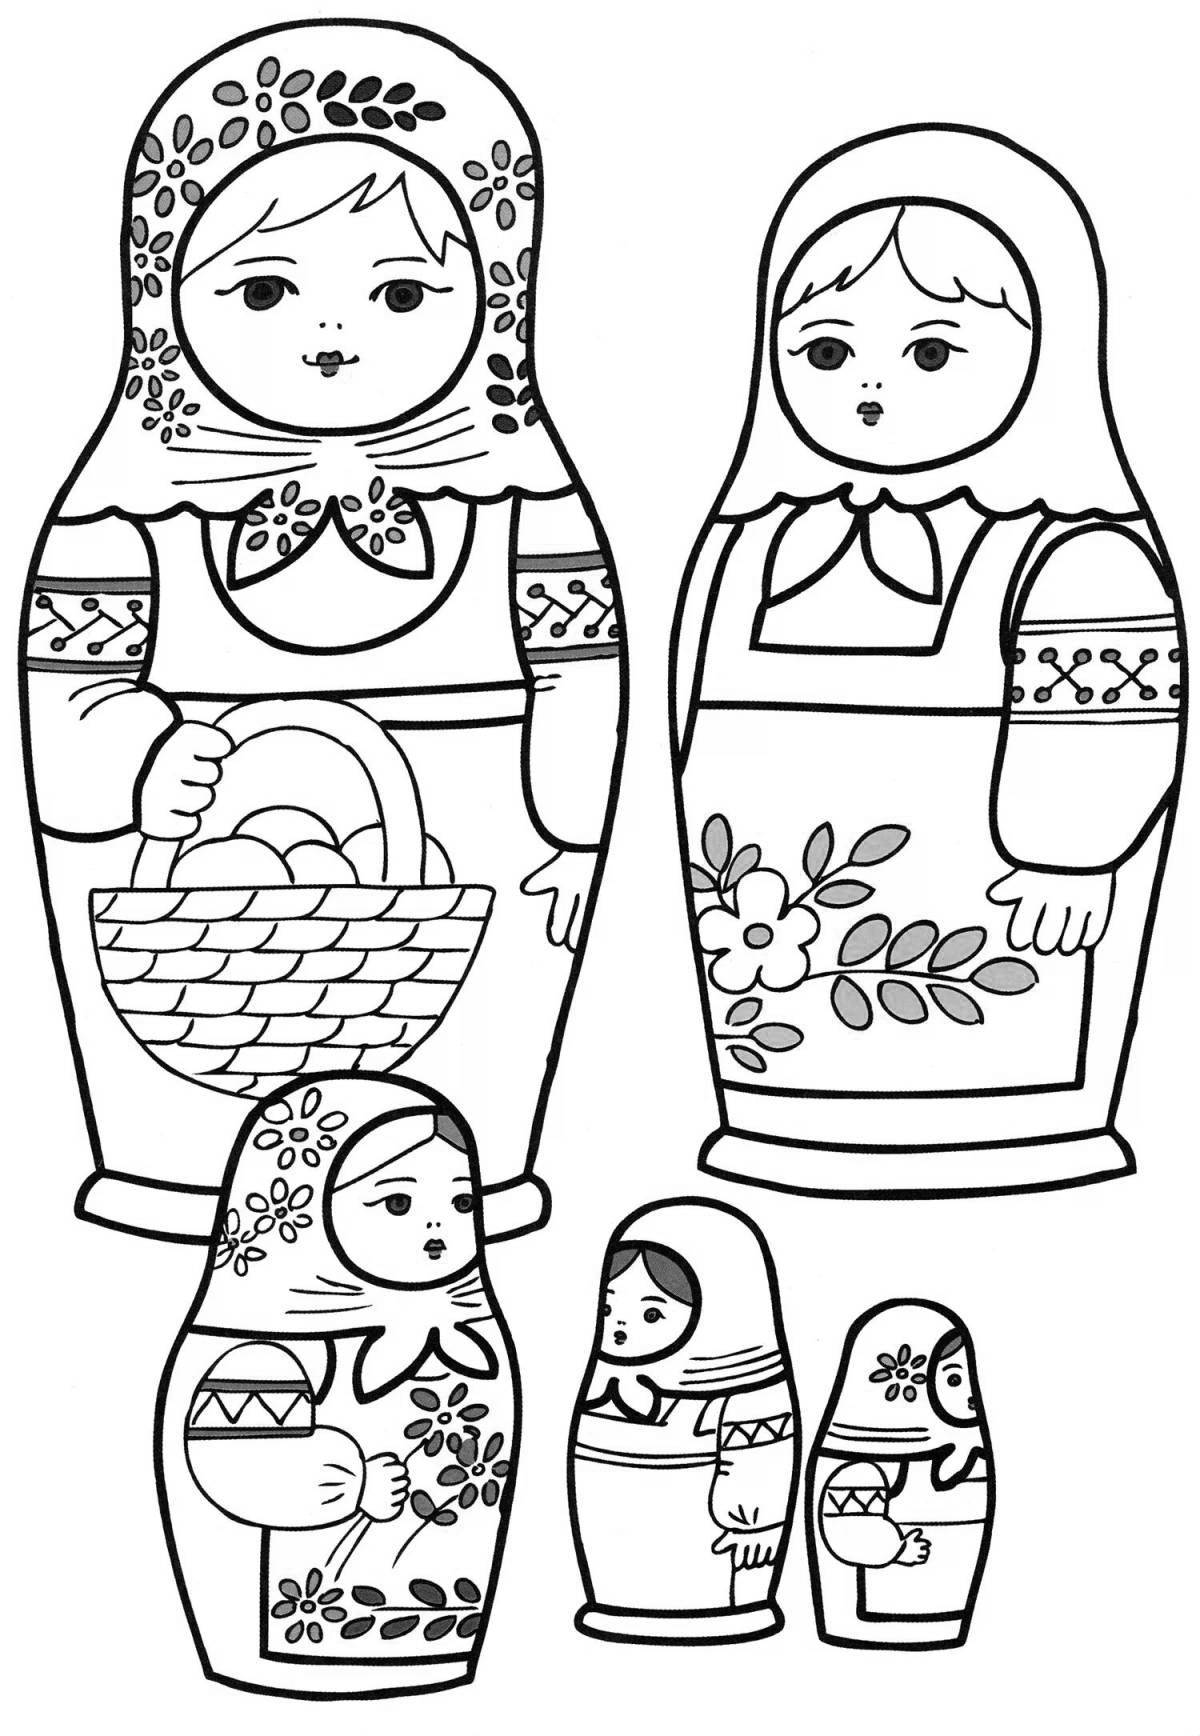 Adorable matryoshka coloring book